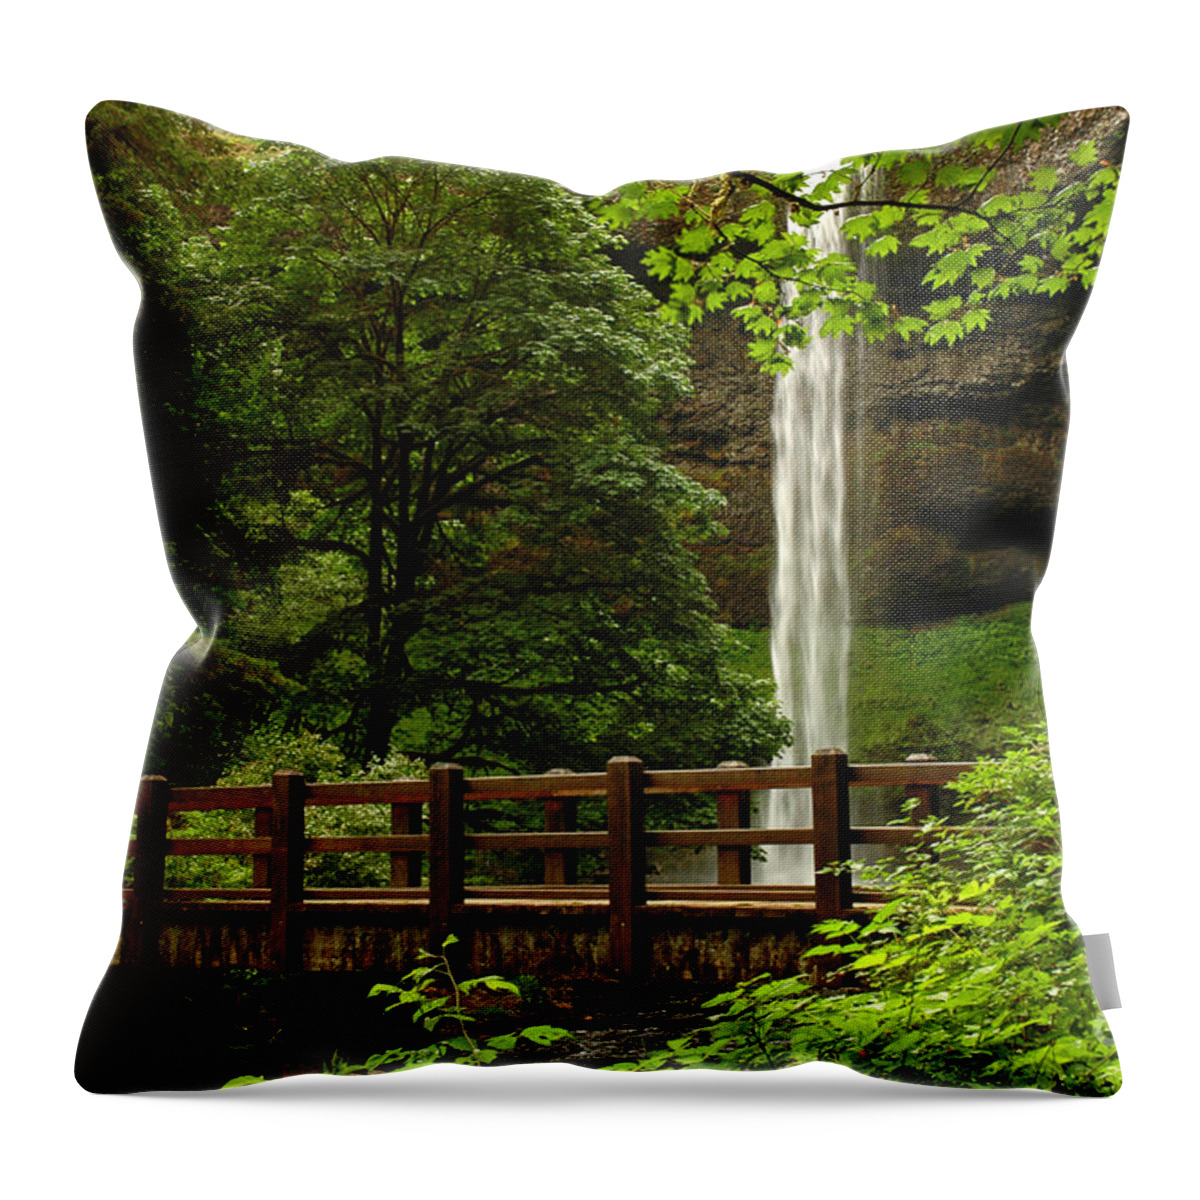 South Falls Throw Pillow featuring the photograph A Hidden Gem by Vivian Christopher